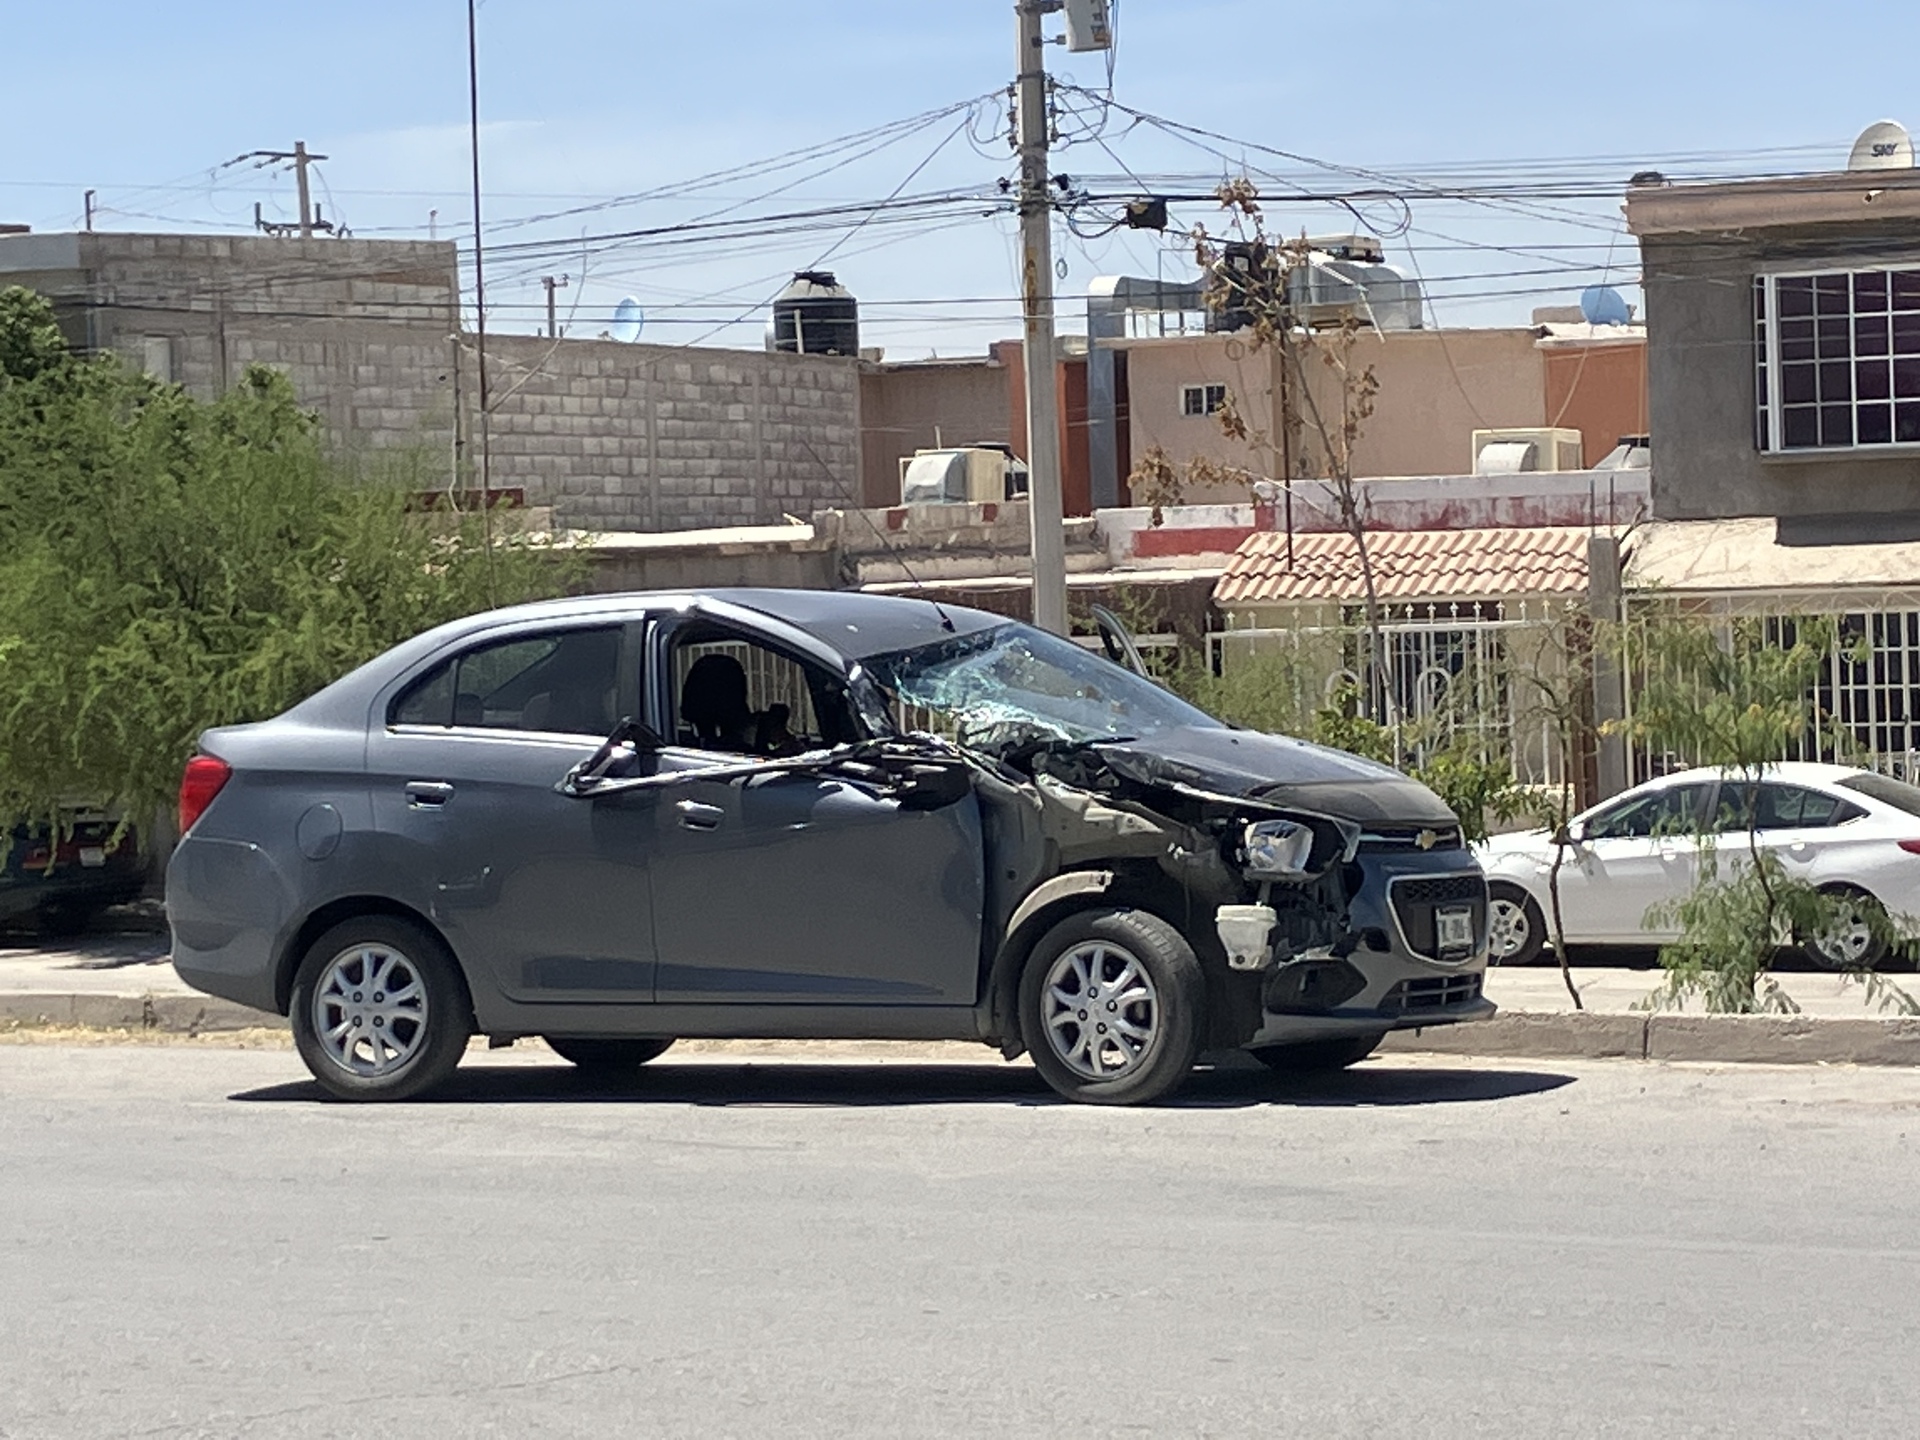 El vehículo Chevrolet recibió fuertes daños en el parabrisas y parte de la carrocería. (EL SIGLO DE TORREÓN)